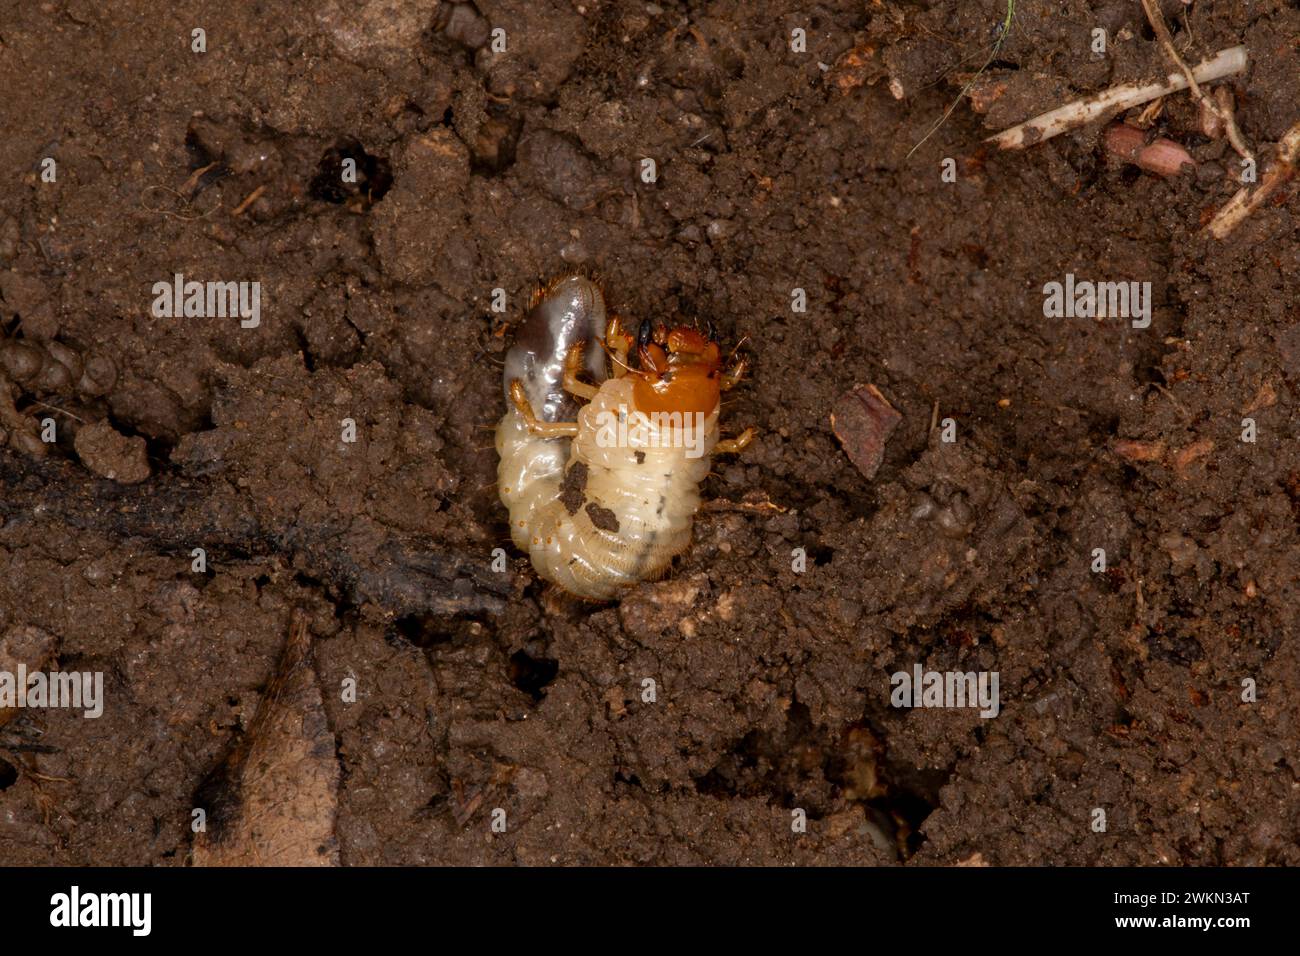 Lansing, Kansas. Verme bianco trovato sotto una roccia. I vermi sono le larve immature di diverse specie di scarabeo. Sono estremamente destru Foto Stock